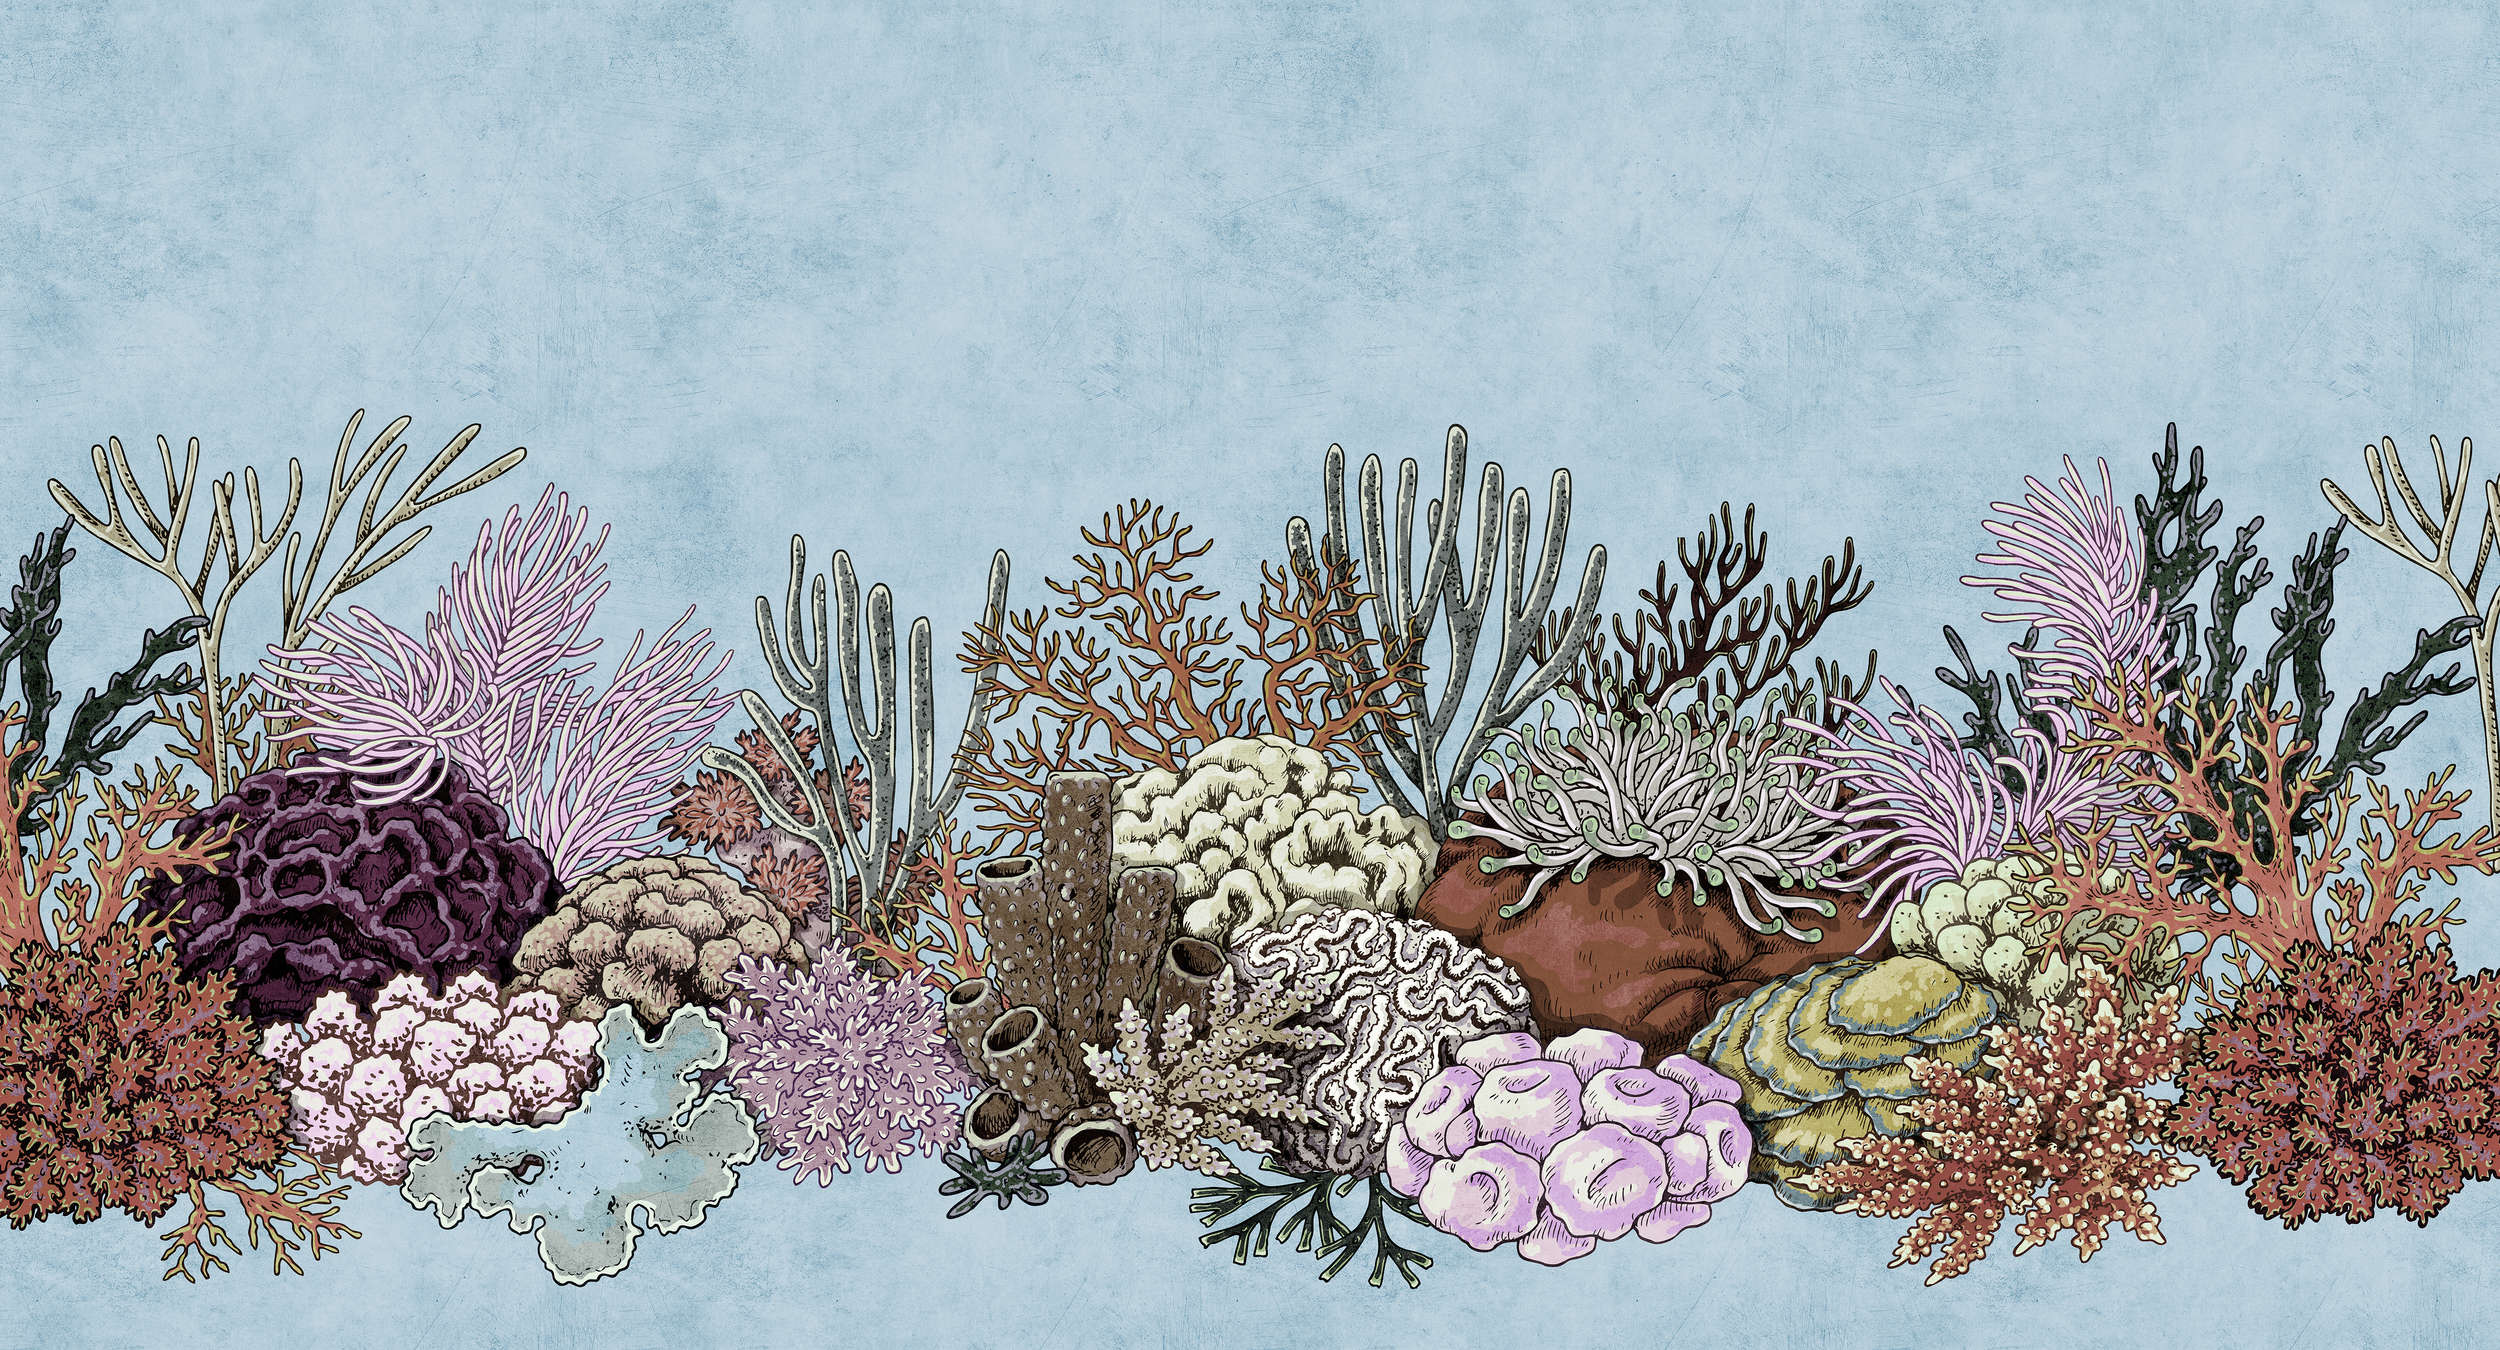             Octopus's Garden 1 - Onderwaterbehang met koralen in vloeipapierstructuur - blauw, roze | parelmoer glad vlies
        